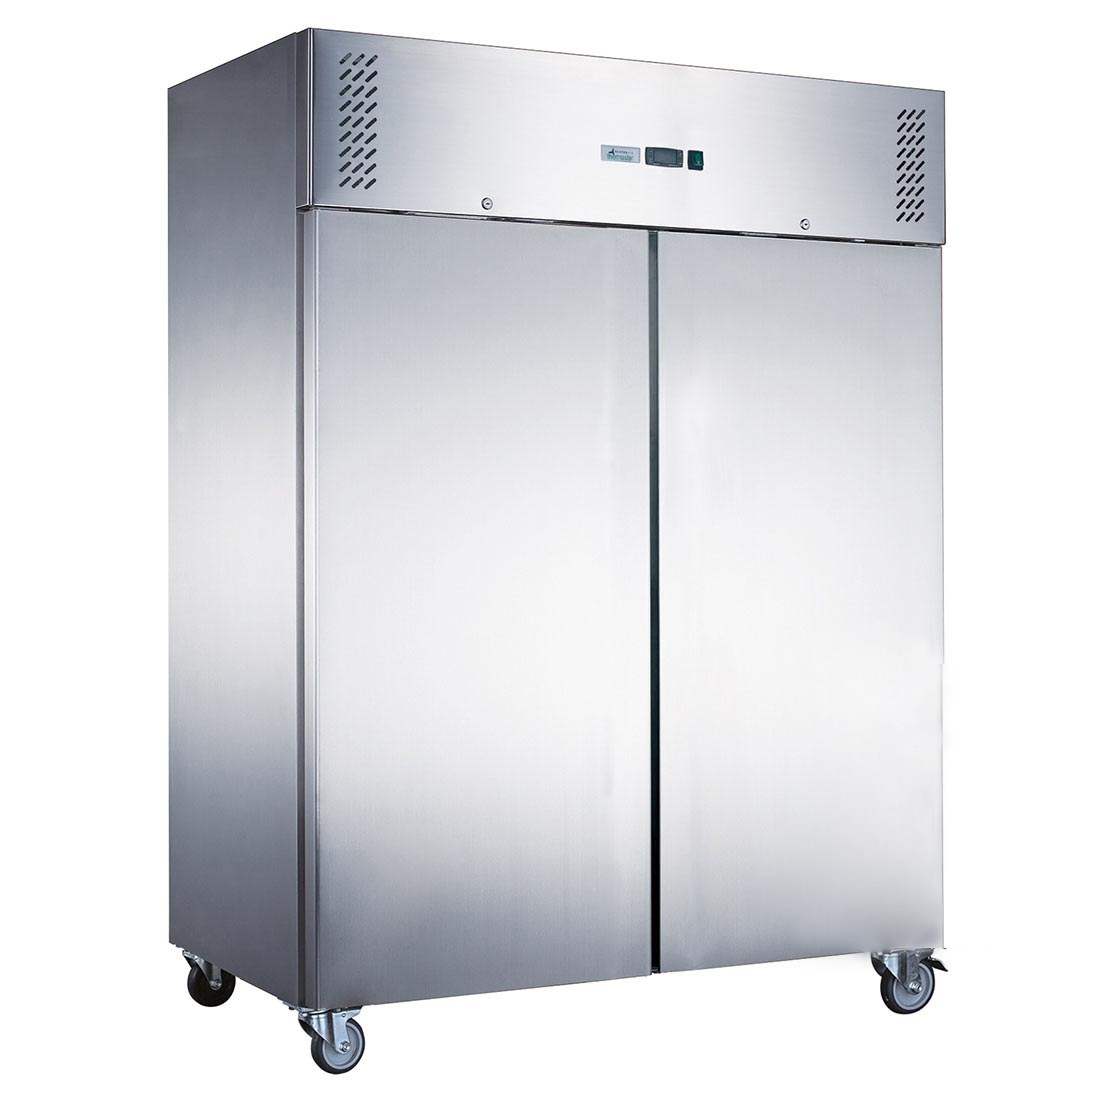 FED-X S/S Double Door Upright Freezer - XURF1200SFV